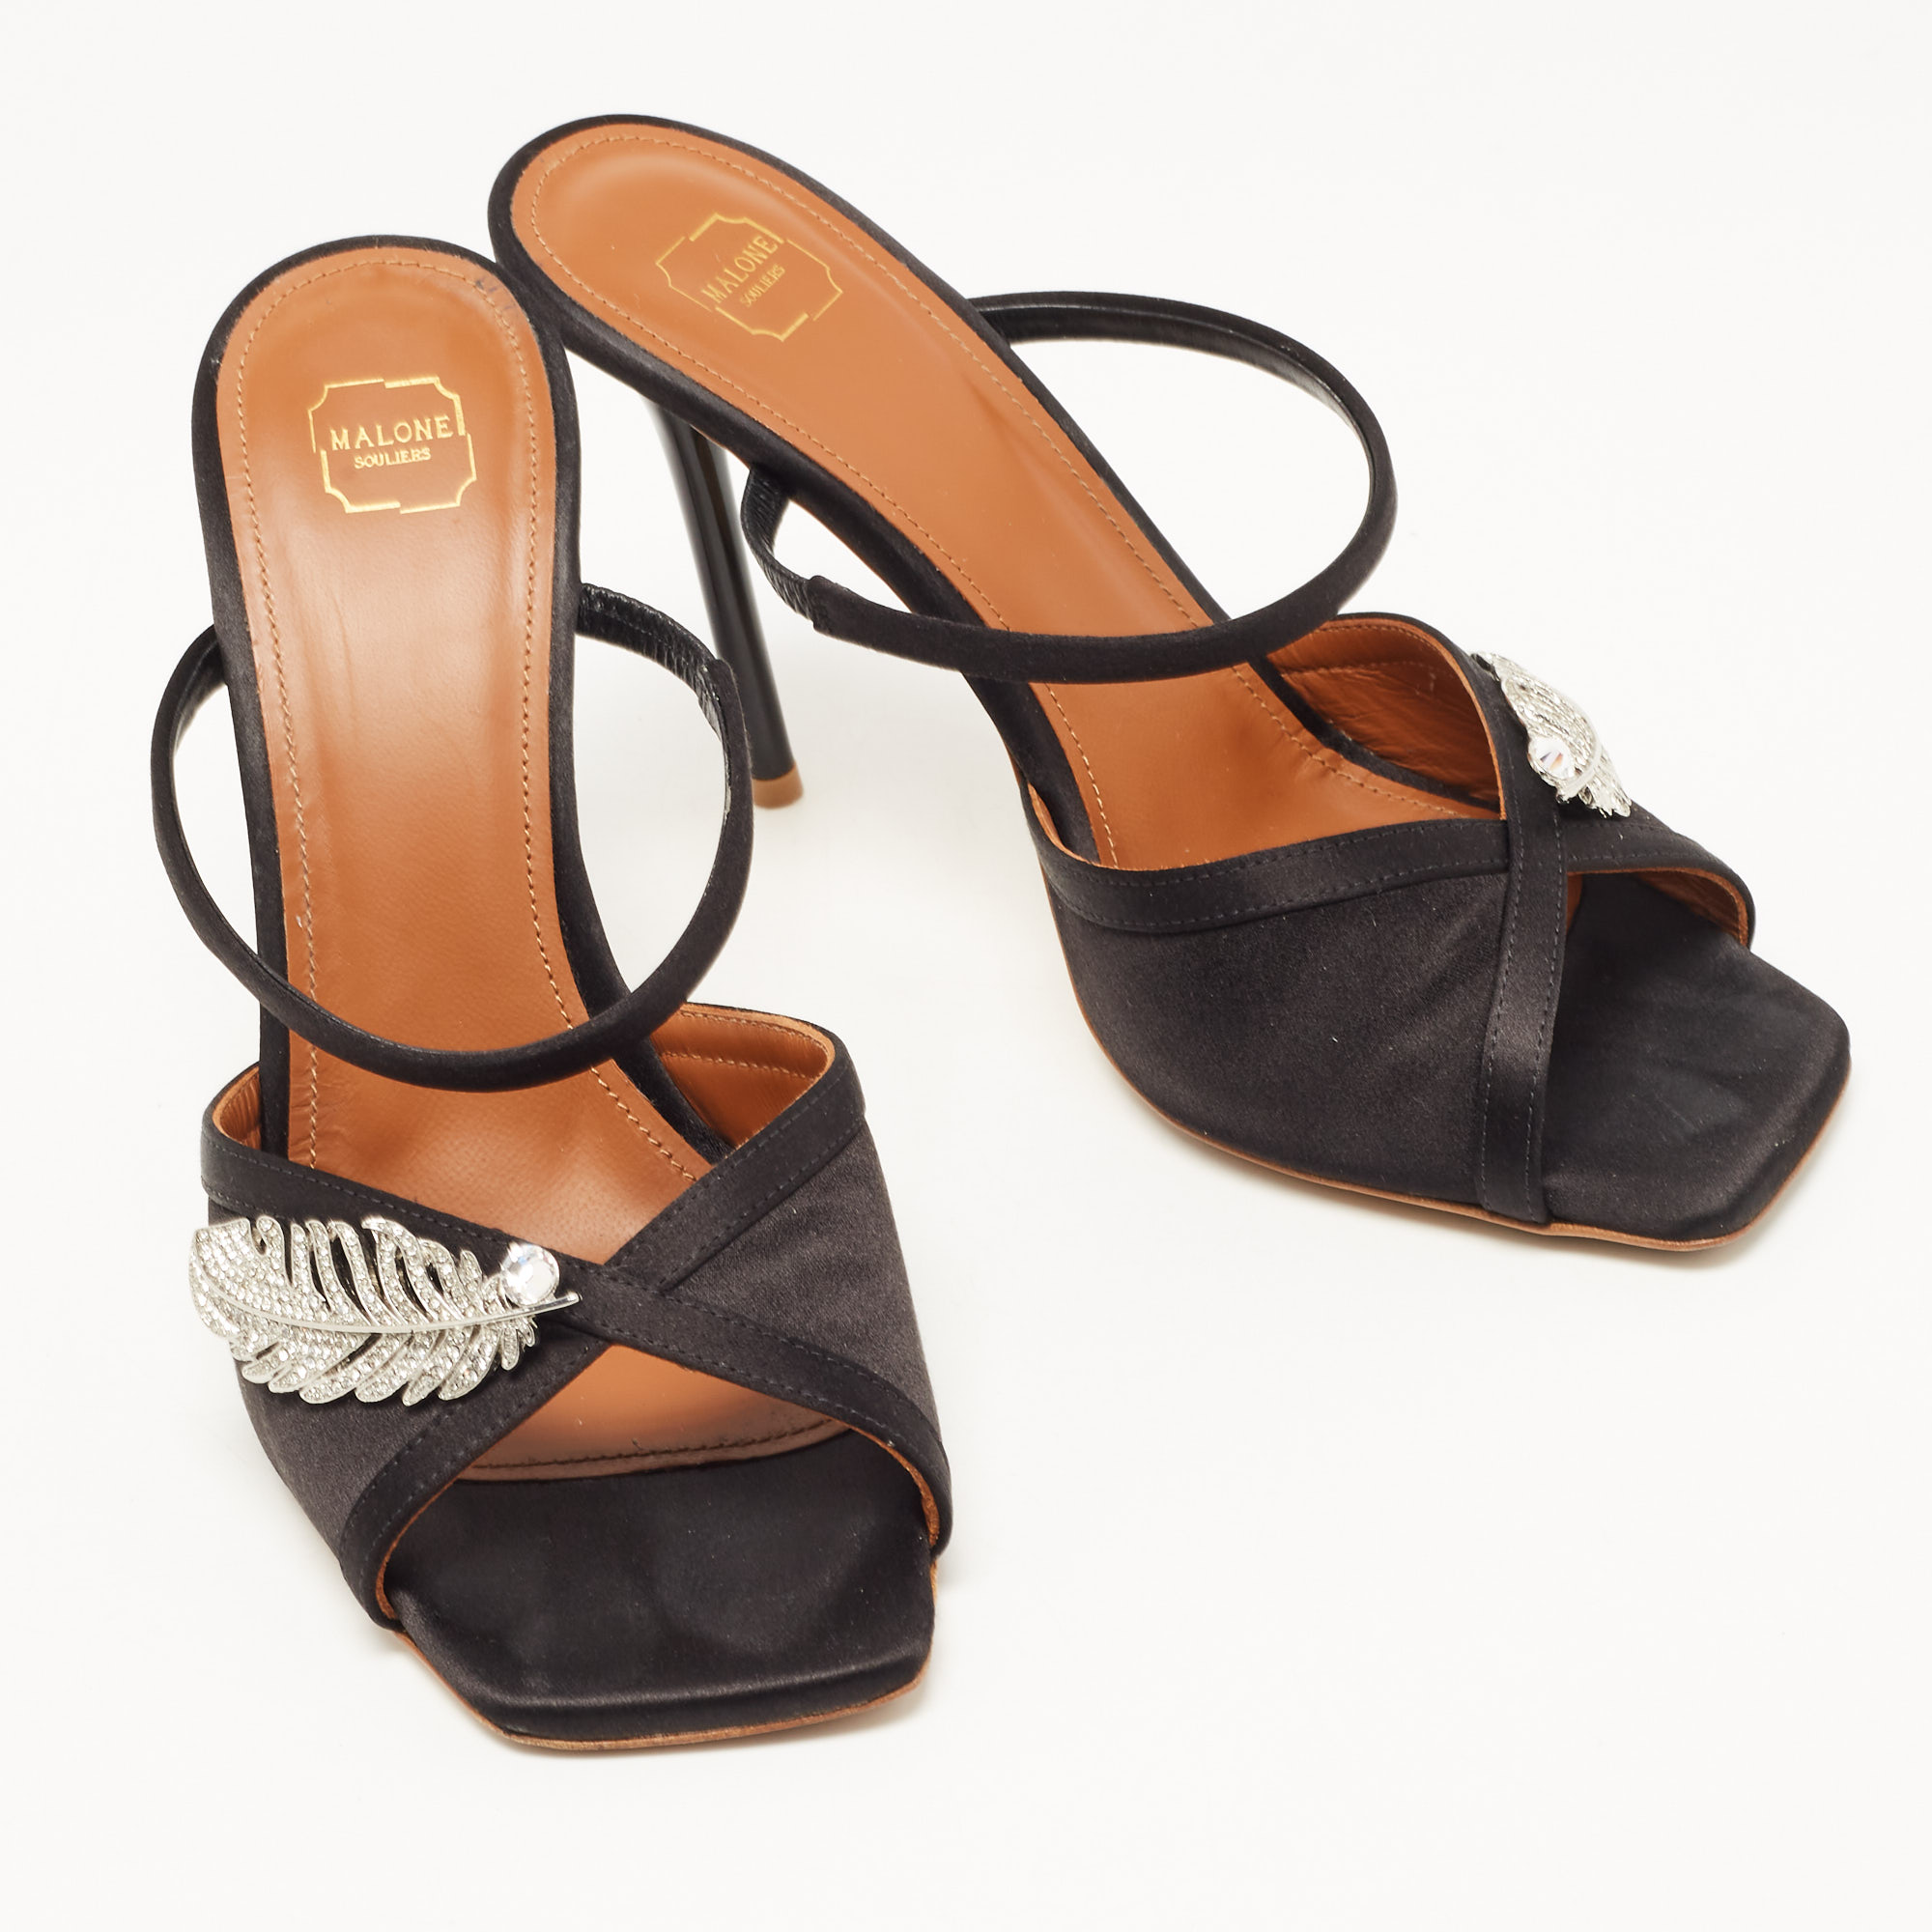 Malone Souliers Black Satin Fion Crystal Embellished Slide Sandals Size 37.5